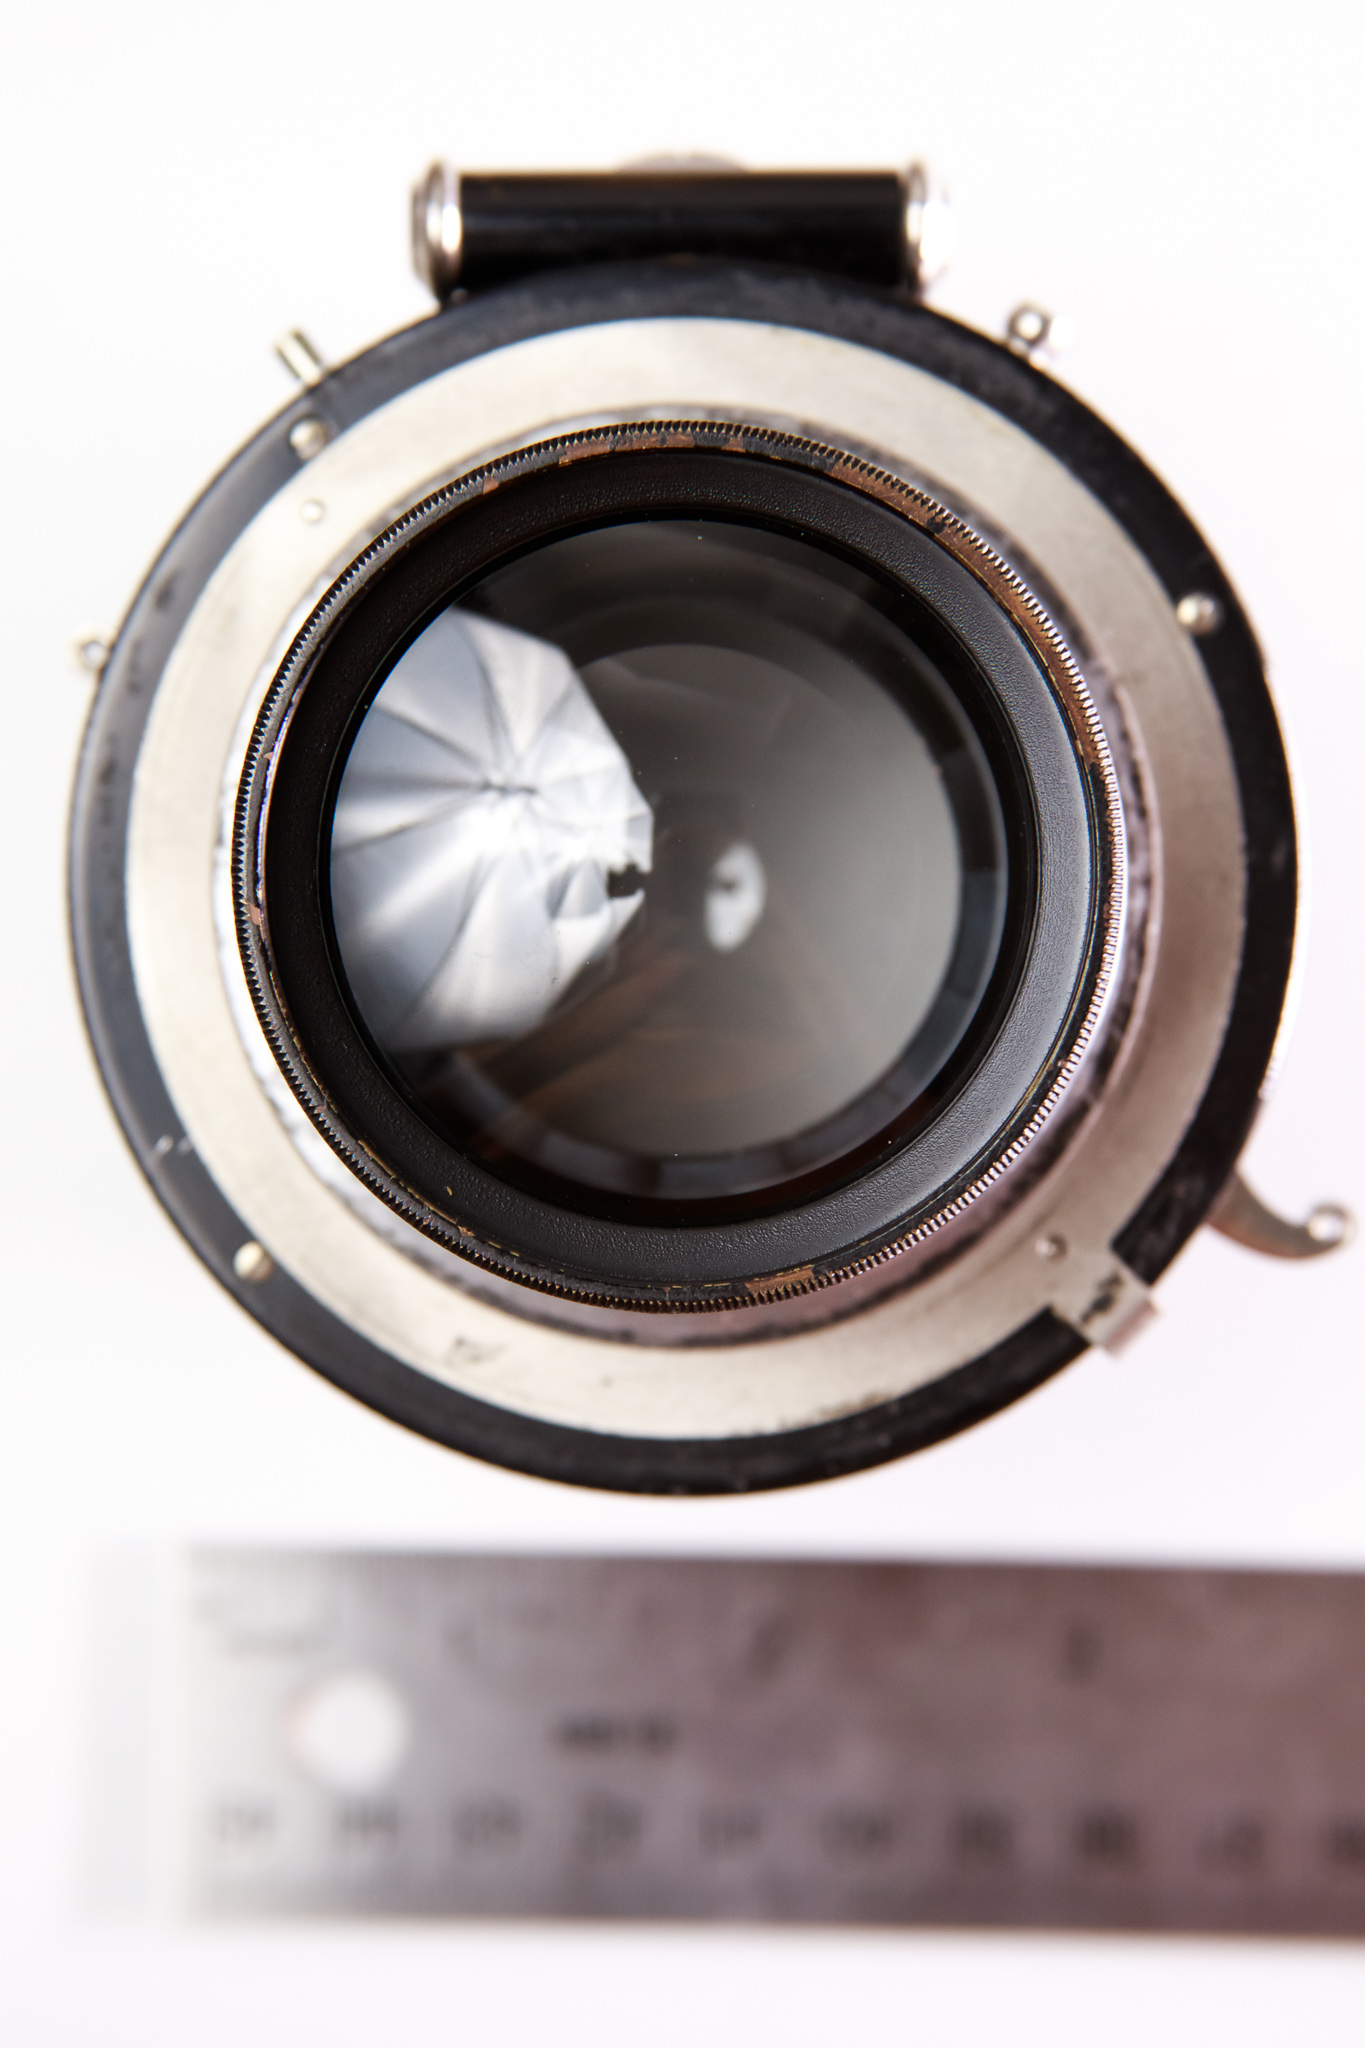 Schneider-Kreuznach Tele-Xenar 360mm f5.5 lens in Compound III shutter